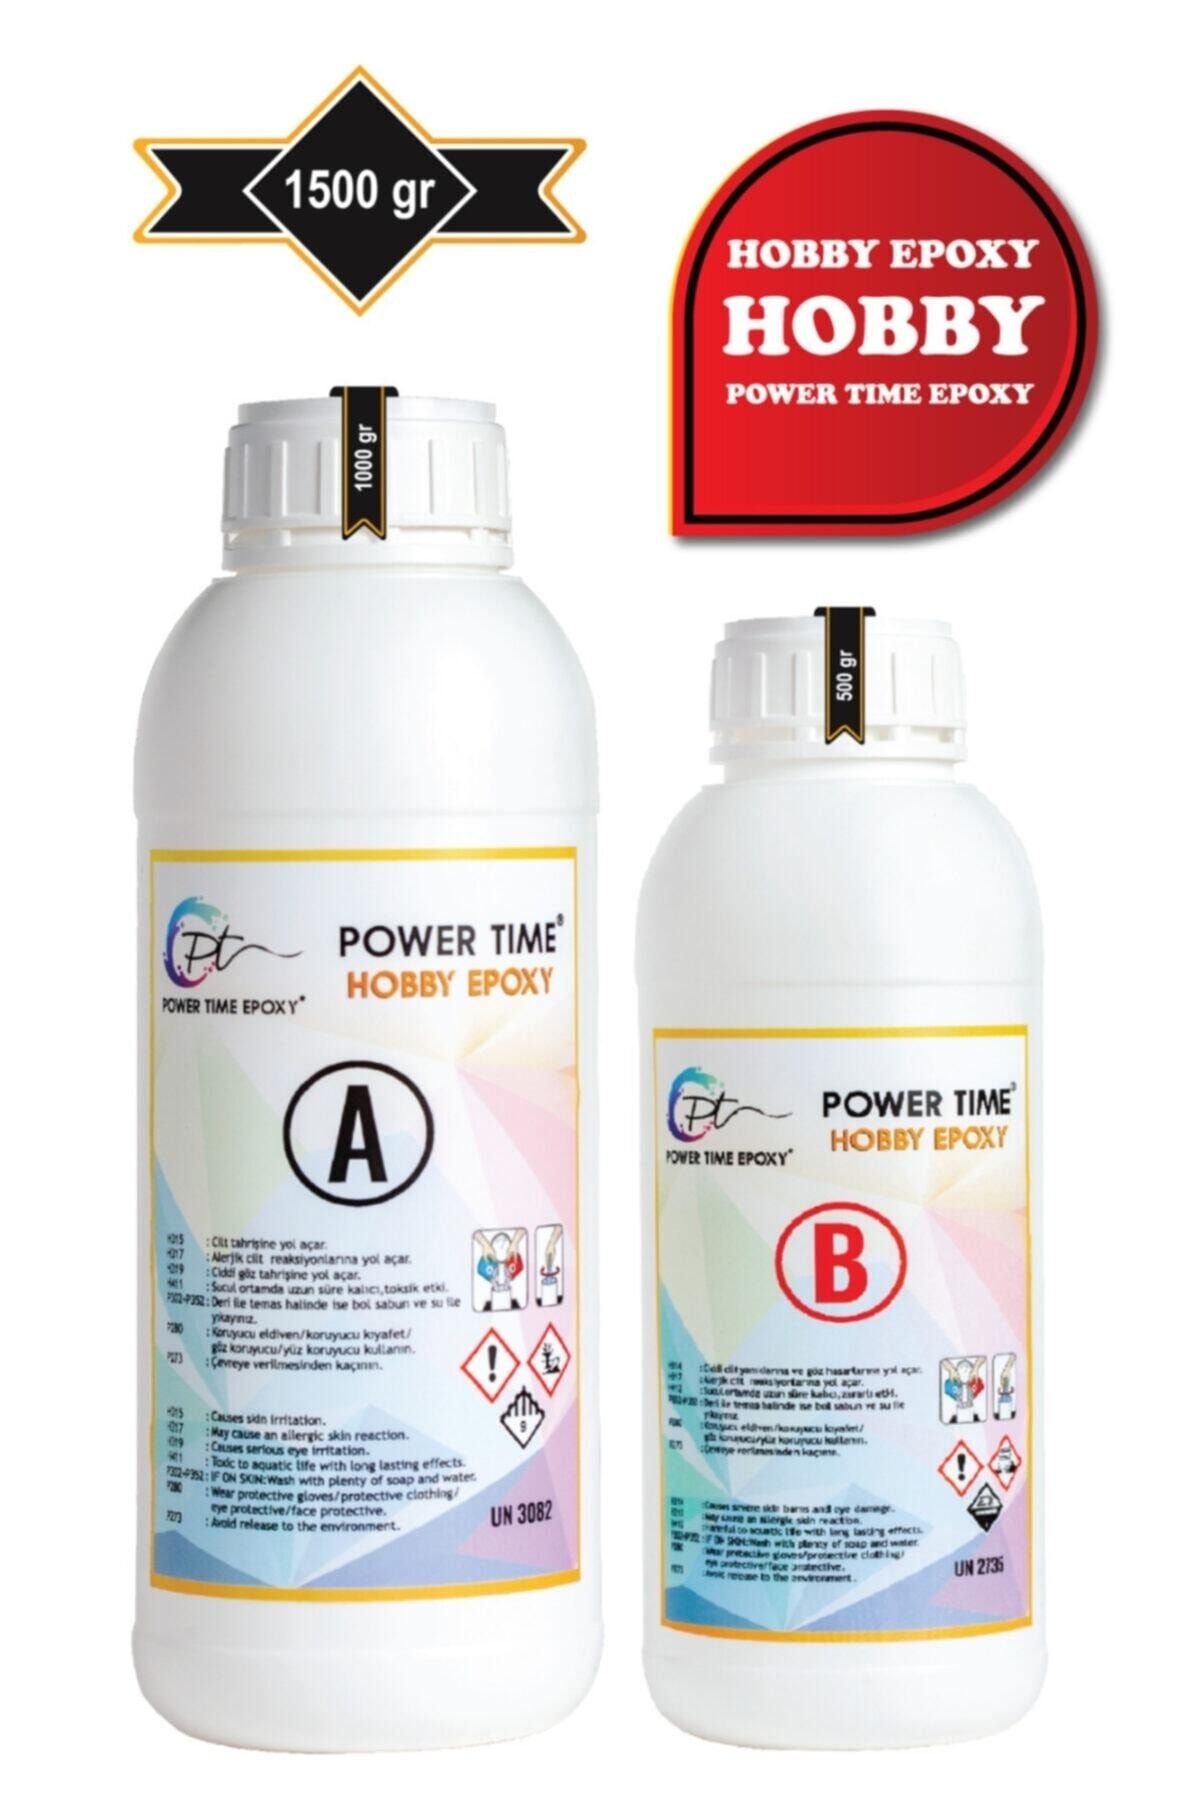 POWER TIME EPOXY 1500 Gram Hobby Epoxy/ Şeffaf Epoksi Reçine Ince Döküm Power Time Epoxy